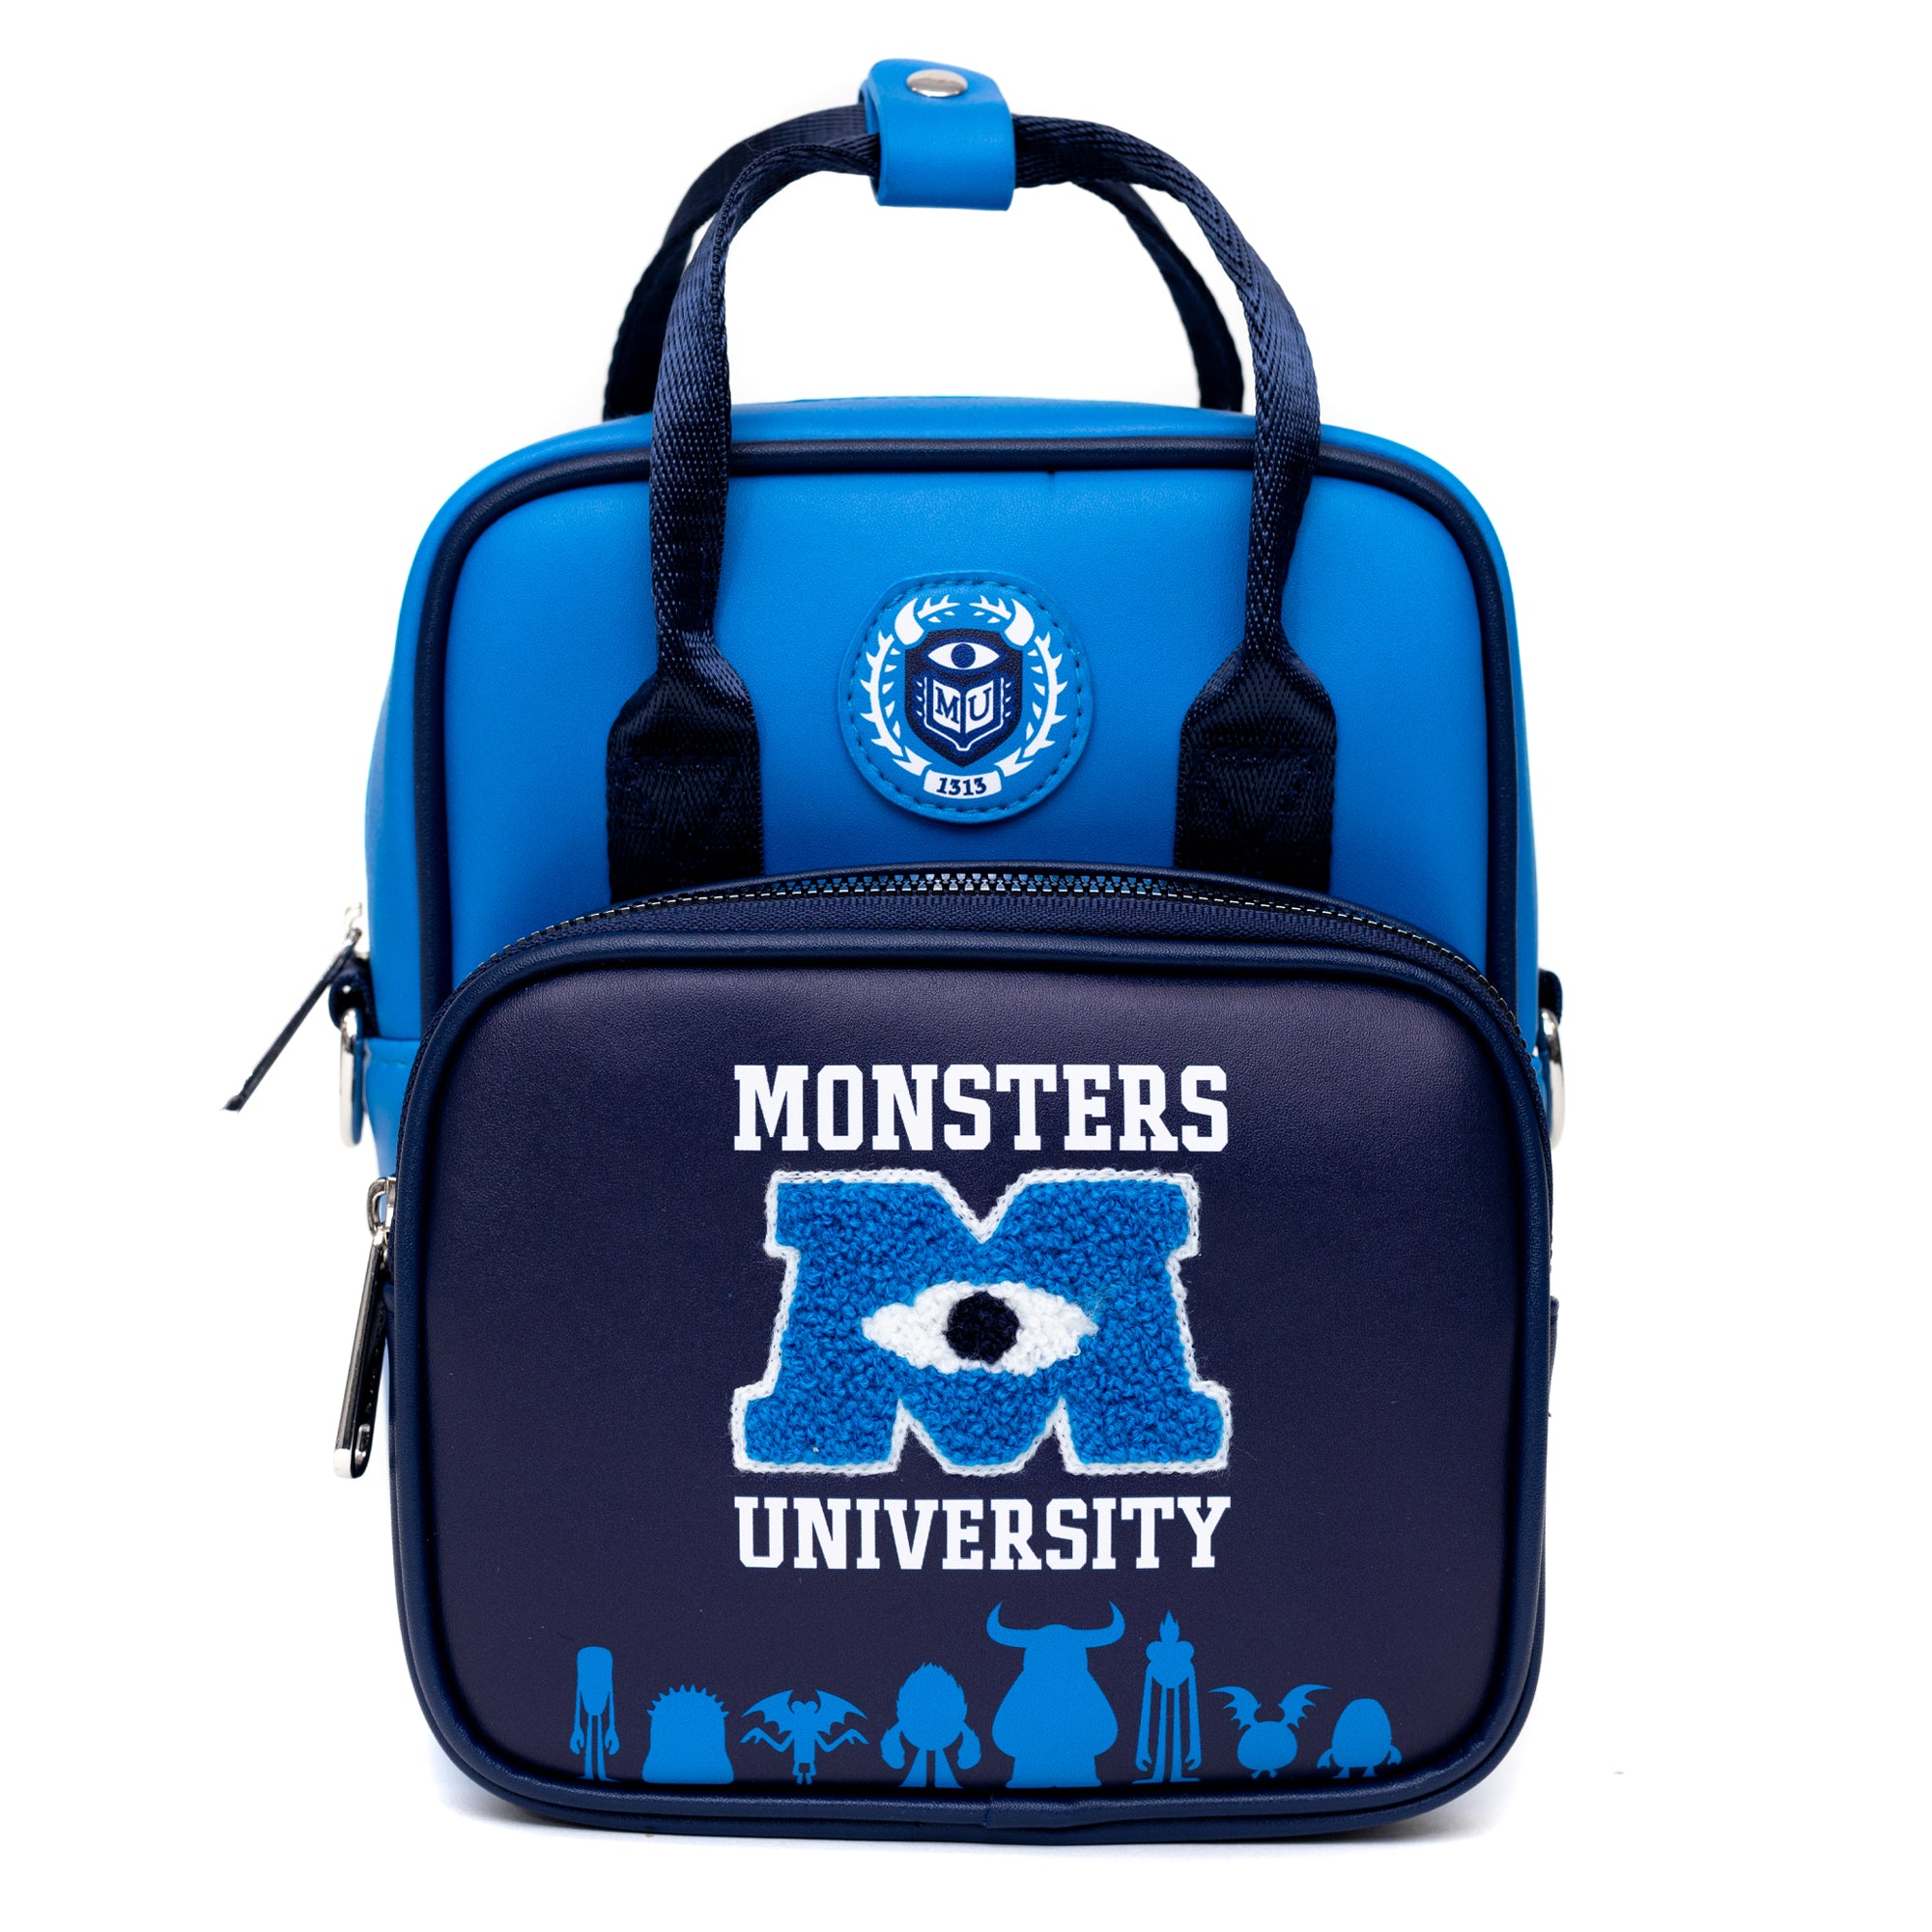 Disney Pixar Monsters University Deluxe Crossbody Bag